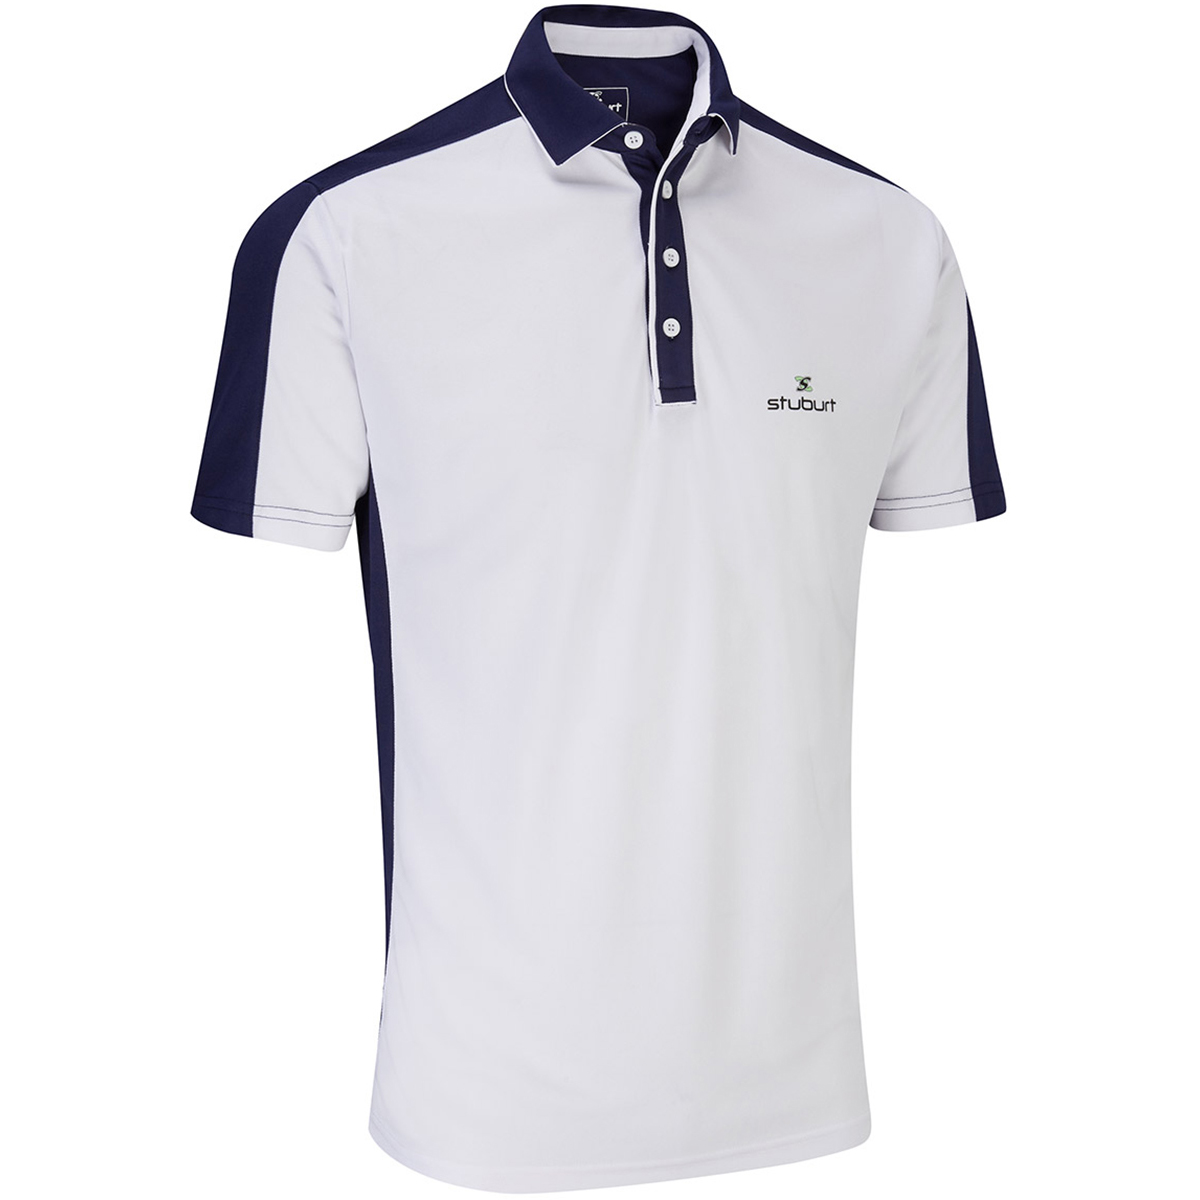 Stuburt Moisture Wicking Polo Shirt | Online Golf